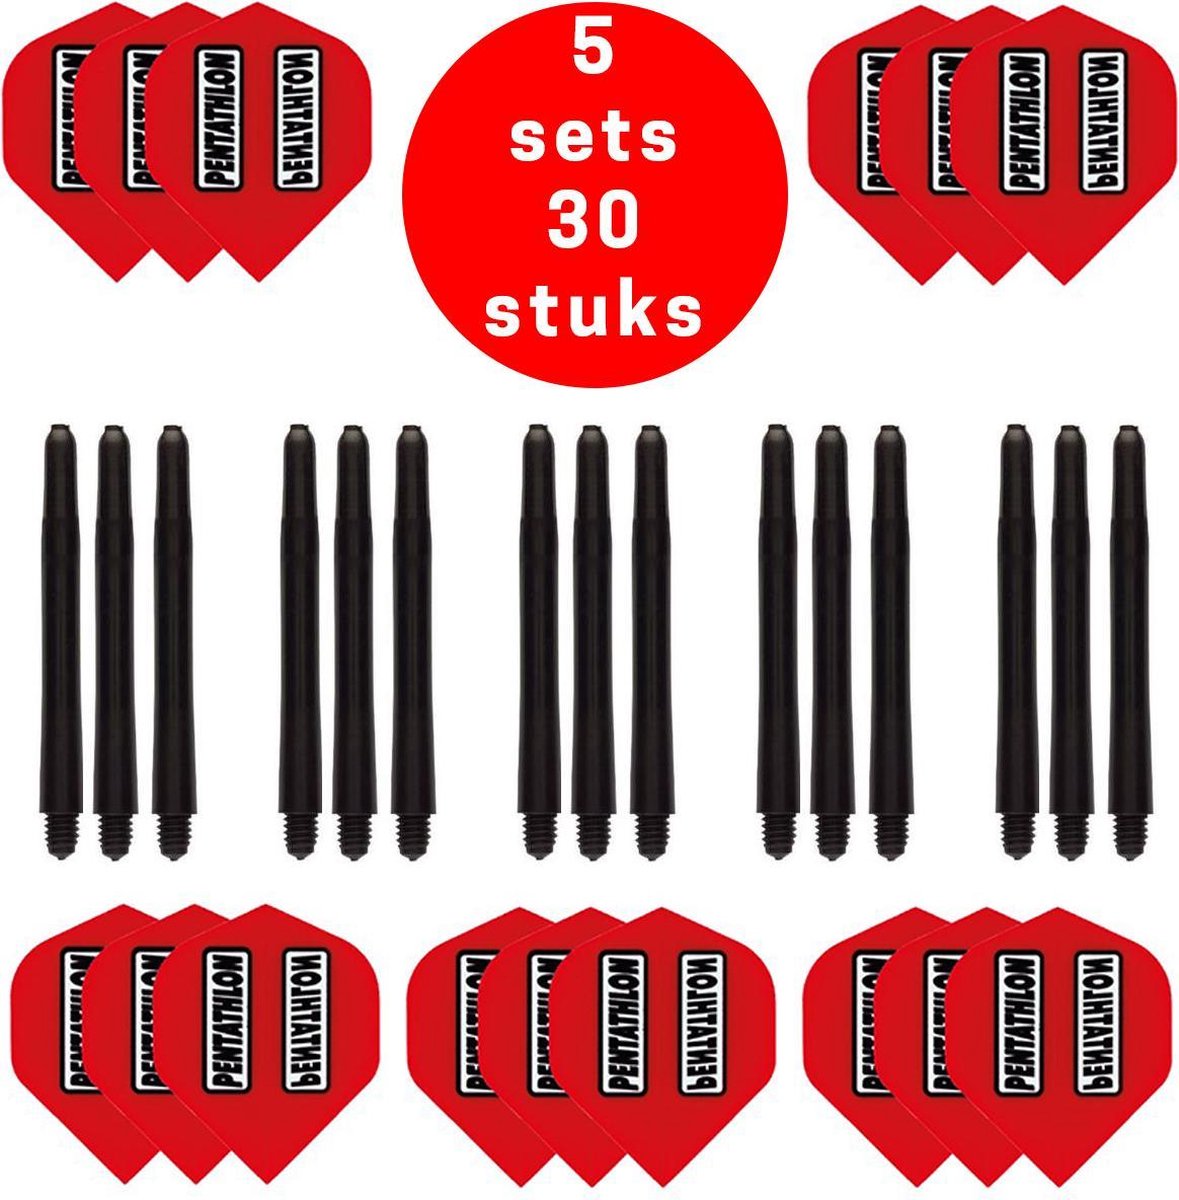 Dragon Darts - 5 sets (15 stuks) Pentathlon darts flights - super stevig - rood - incl. 5 sets (15 stuks) - medium - darts shafts - zwart